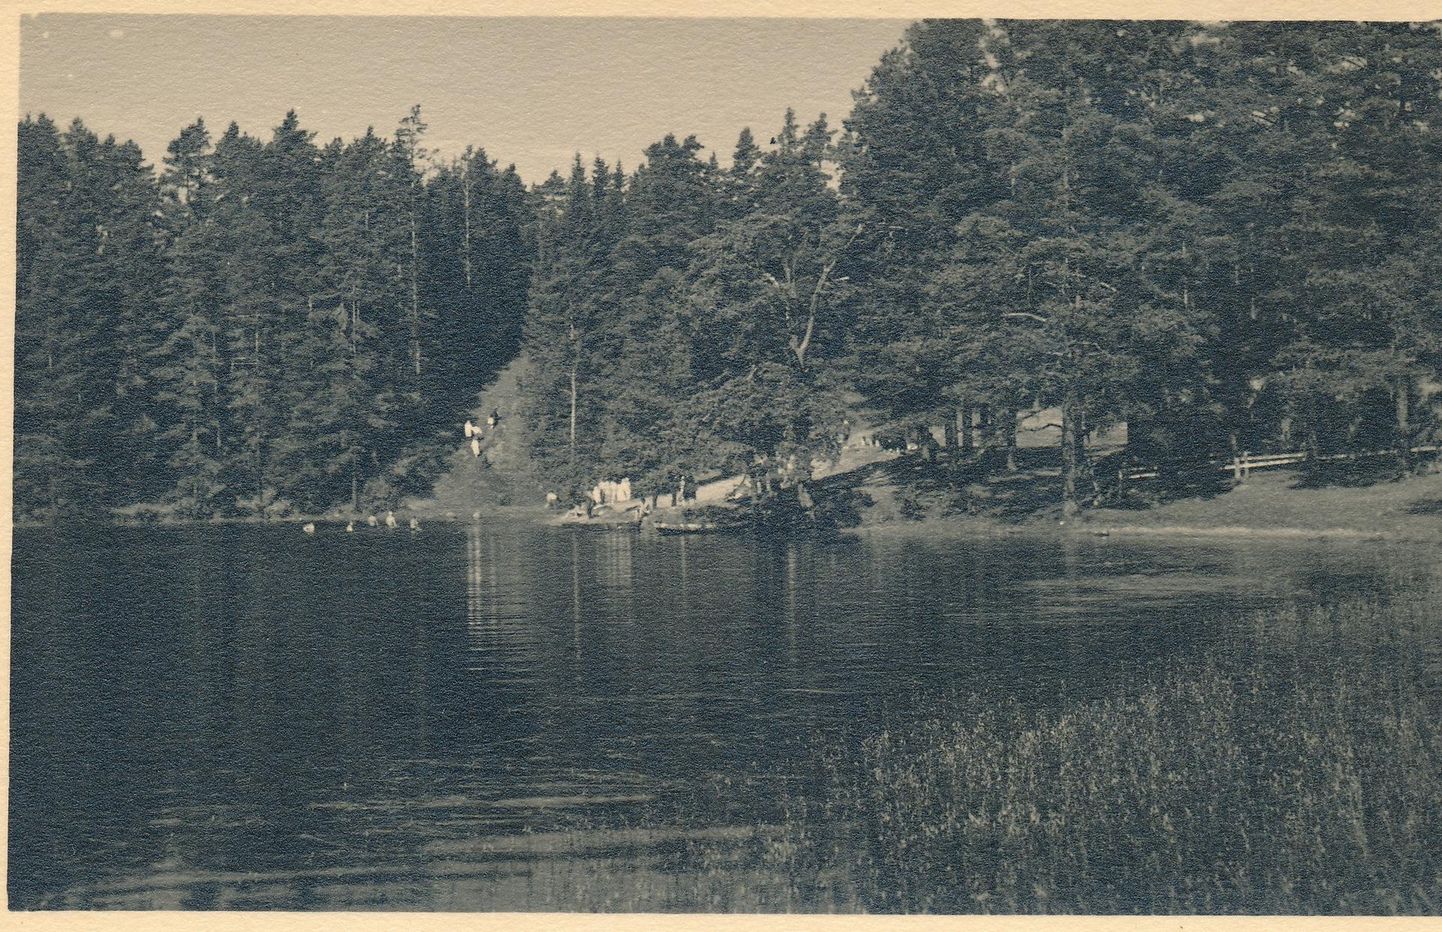 Carl Sarap jõudis oma kaameraga Uljaste järve äärde mõni aasta hiljem, kui Liisa Edile vitsa oli andnud. Aga küllap elasid nad ka siis sealsamas.